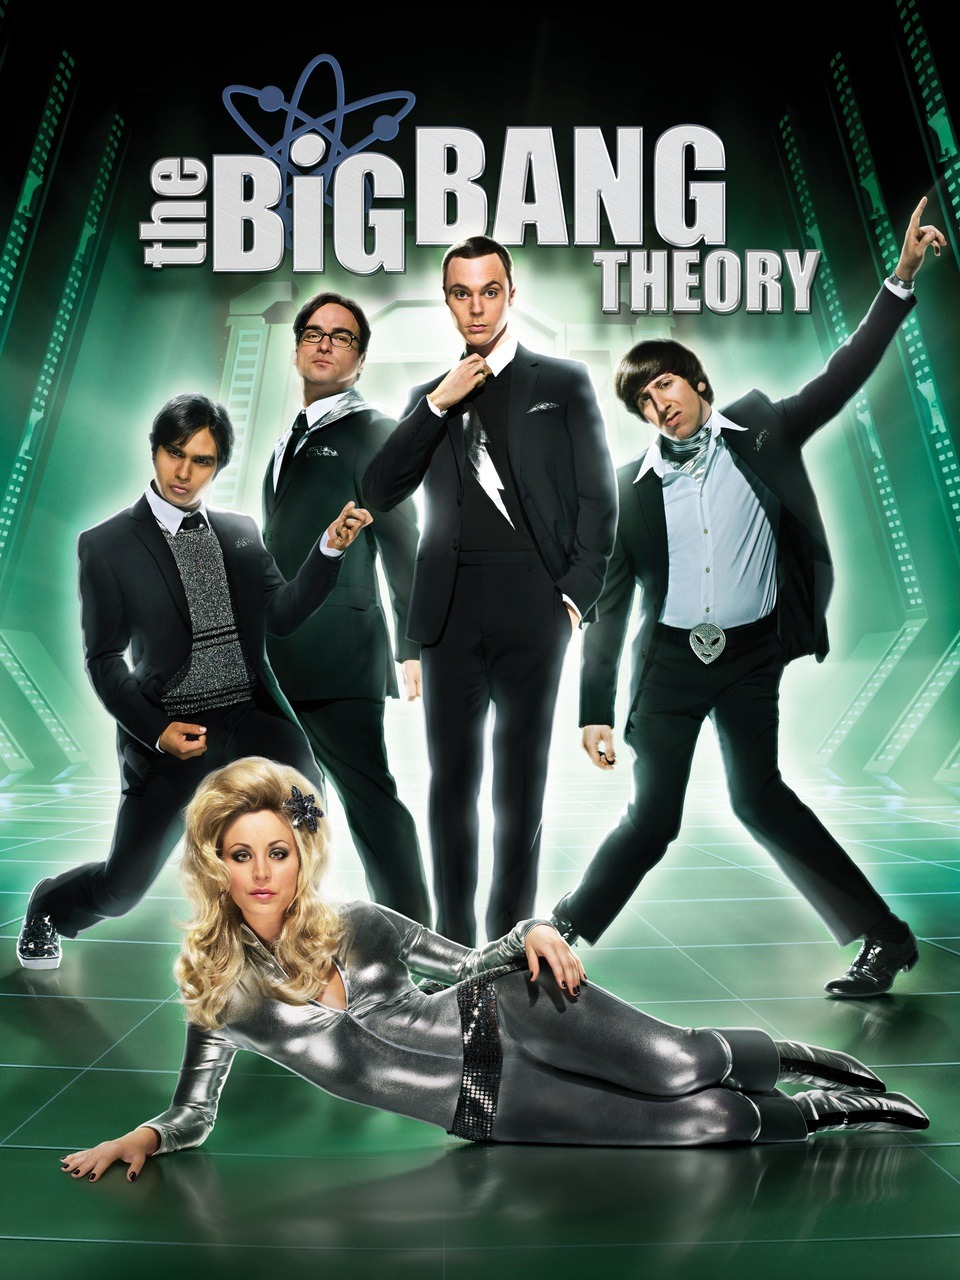 The Big Bang Theory Season 4 (2010)